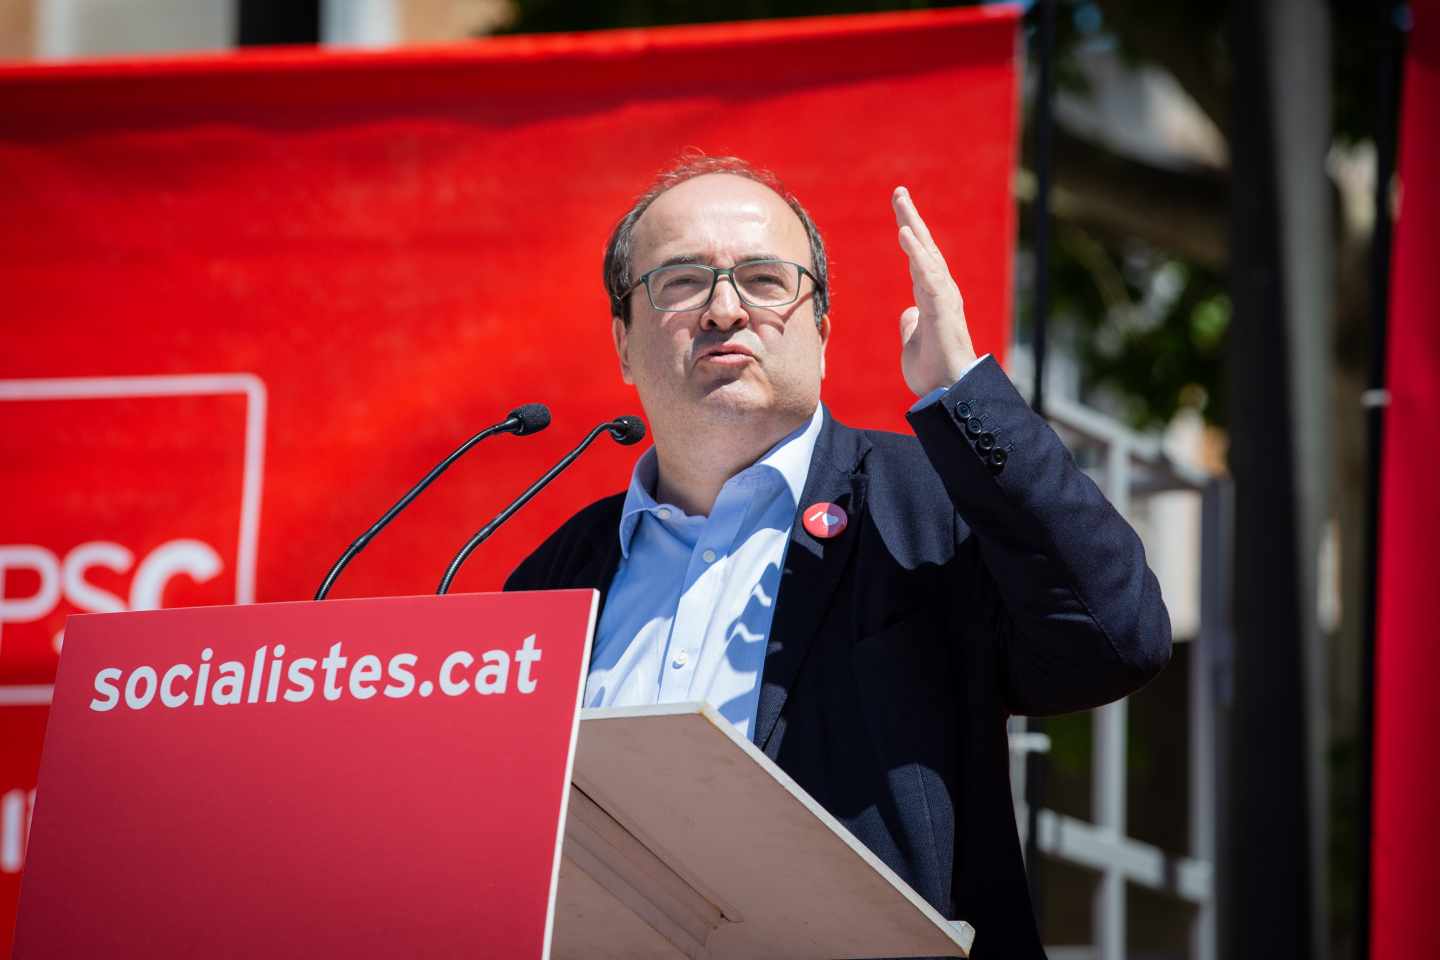 Miquel Iceta, en la campaña electoral del 28-A.